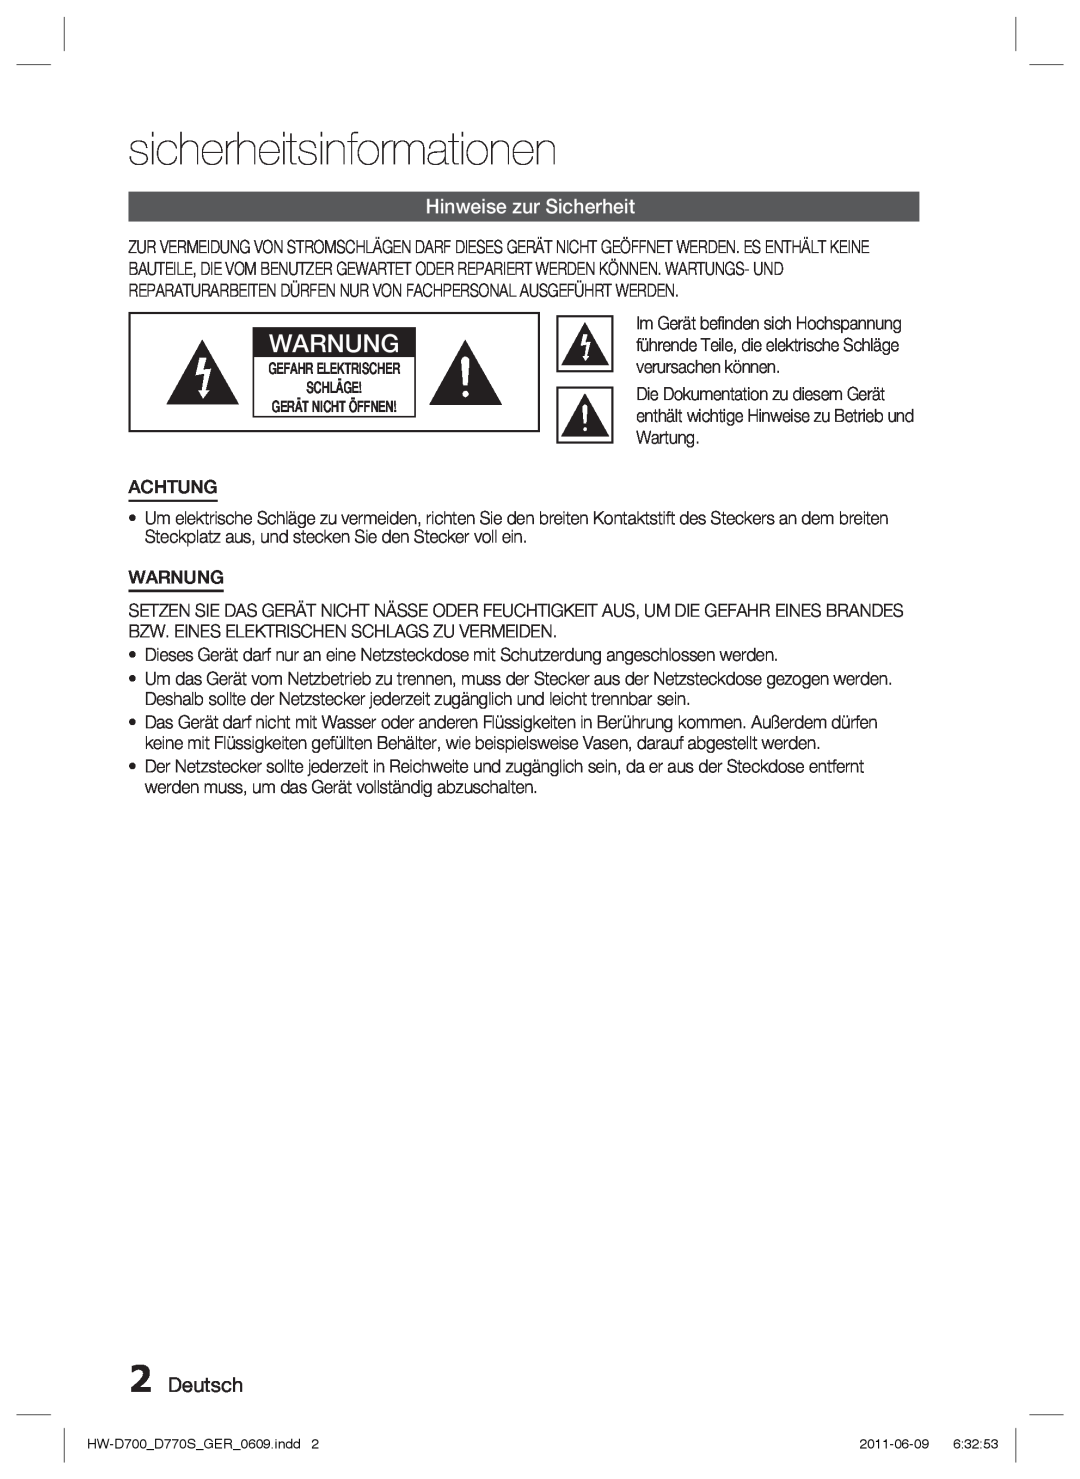 Samsung HW-D770S/EN, HW-D700/EN manual sicherheitsinformationen, Hinweise zur Sicherheit, Deutsch, Warnung 